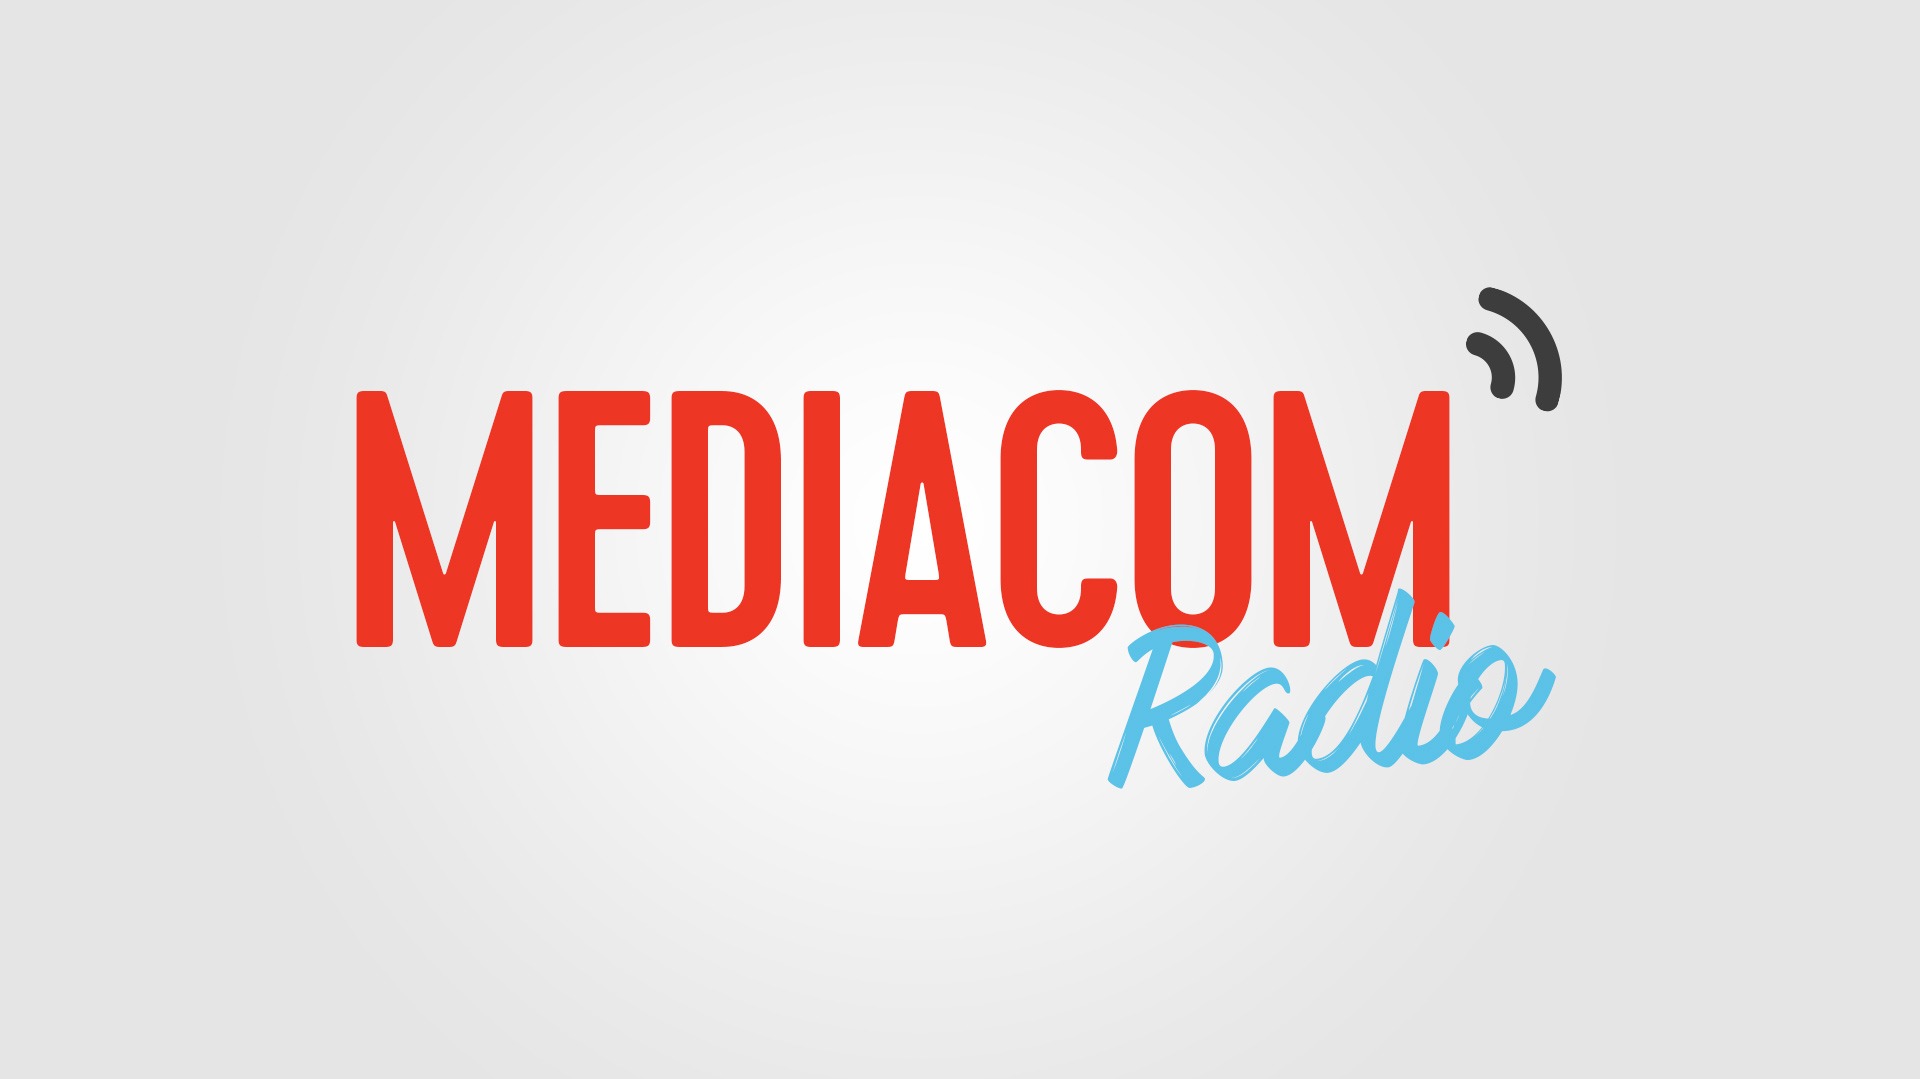 Mediacom radio v01